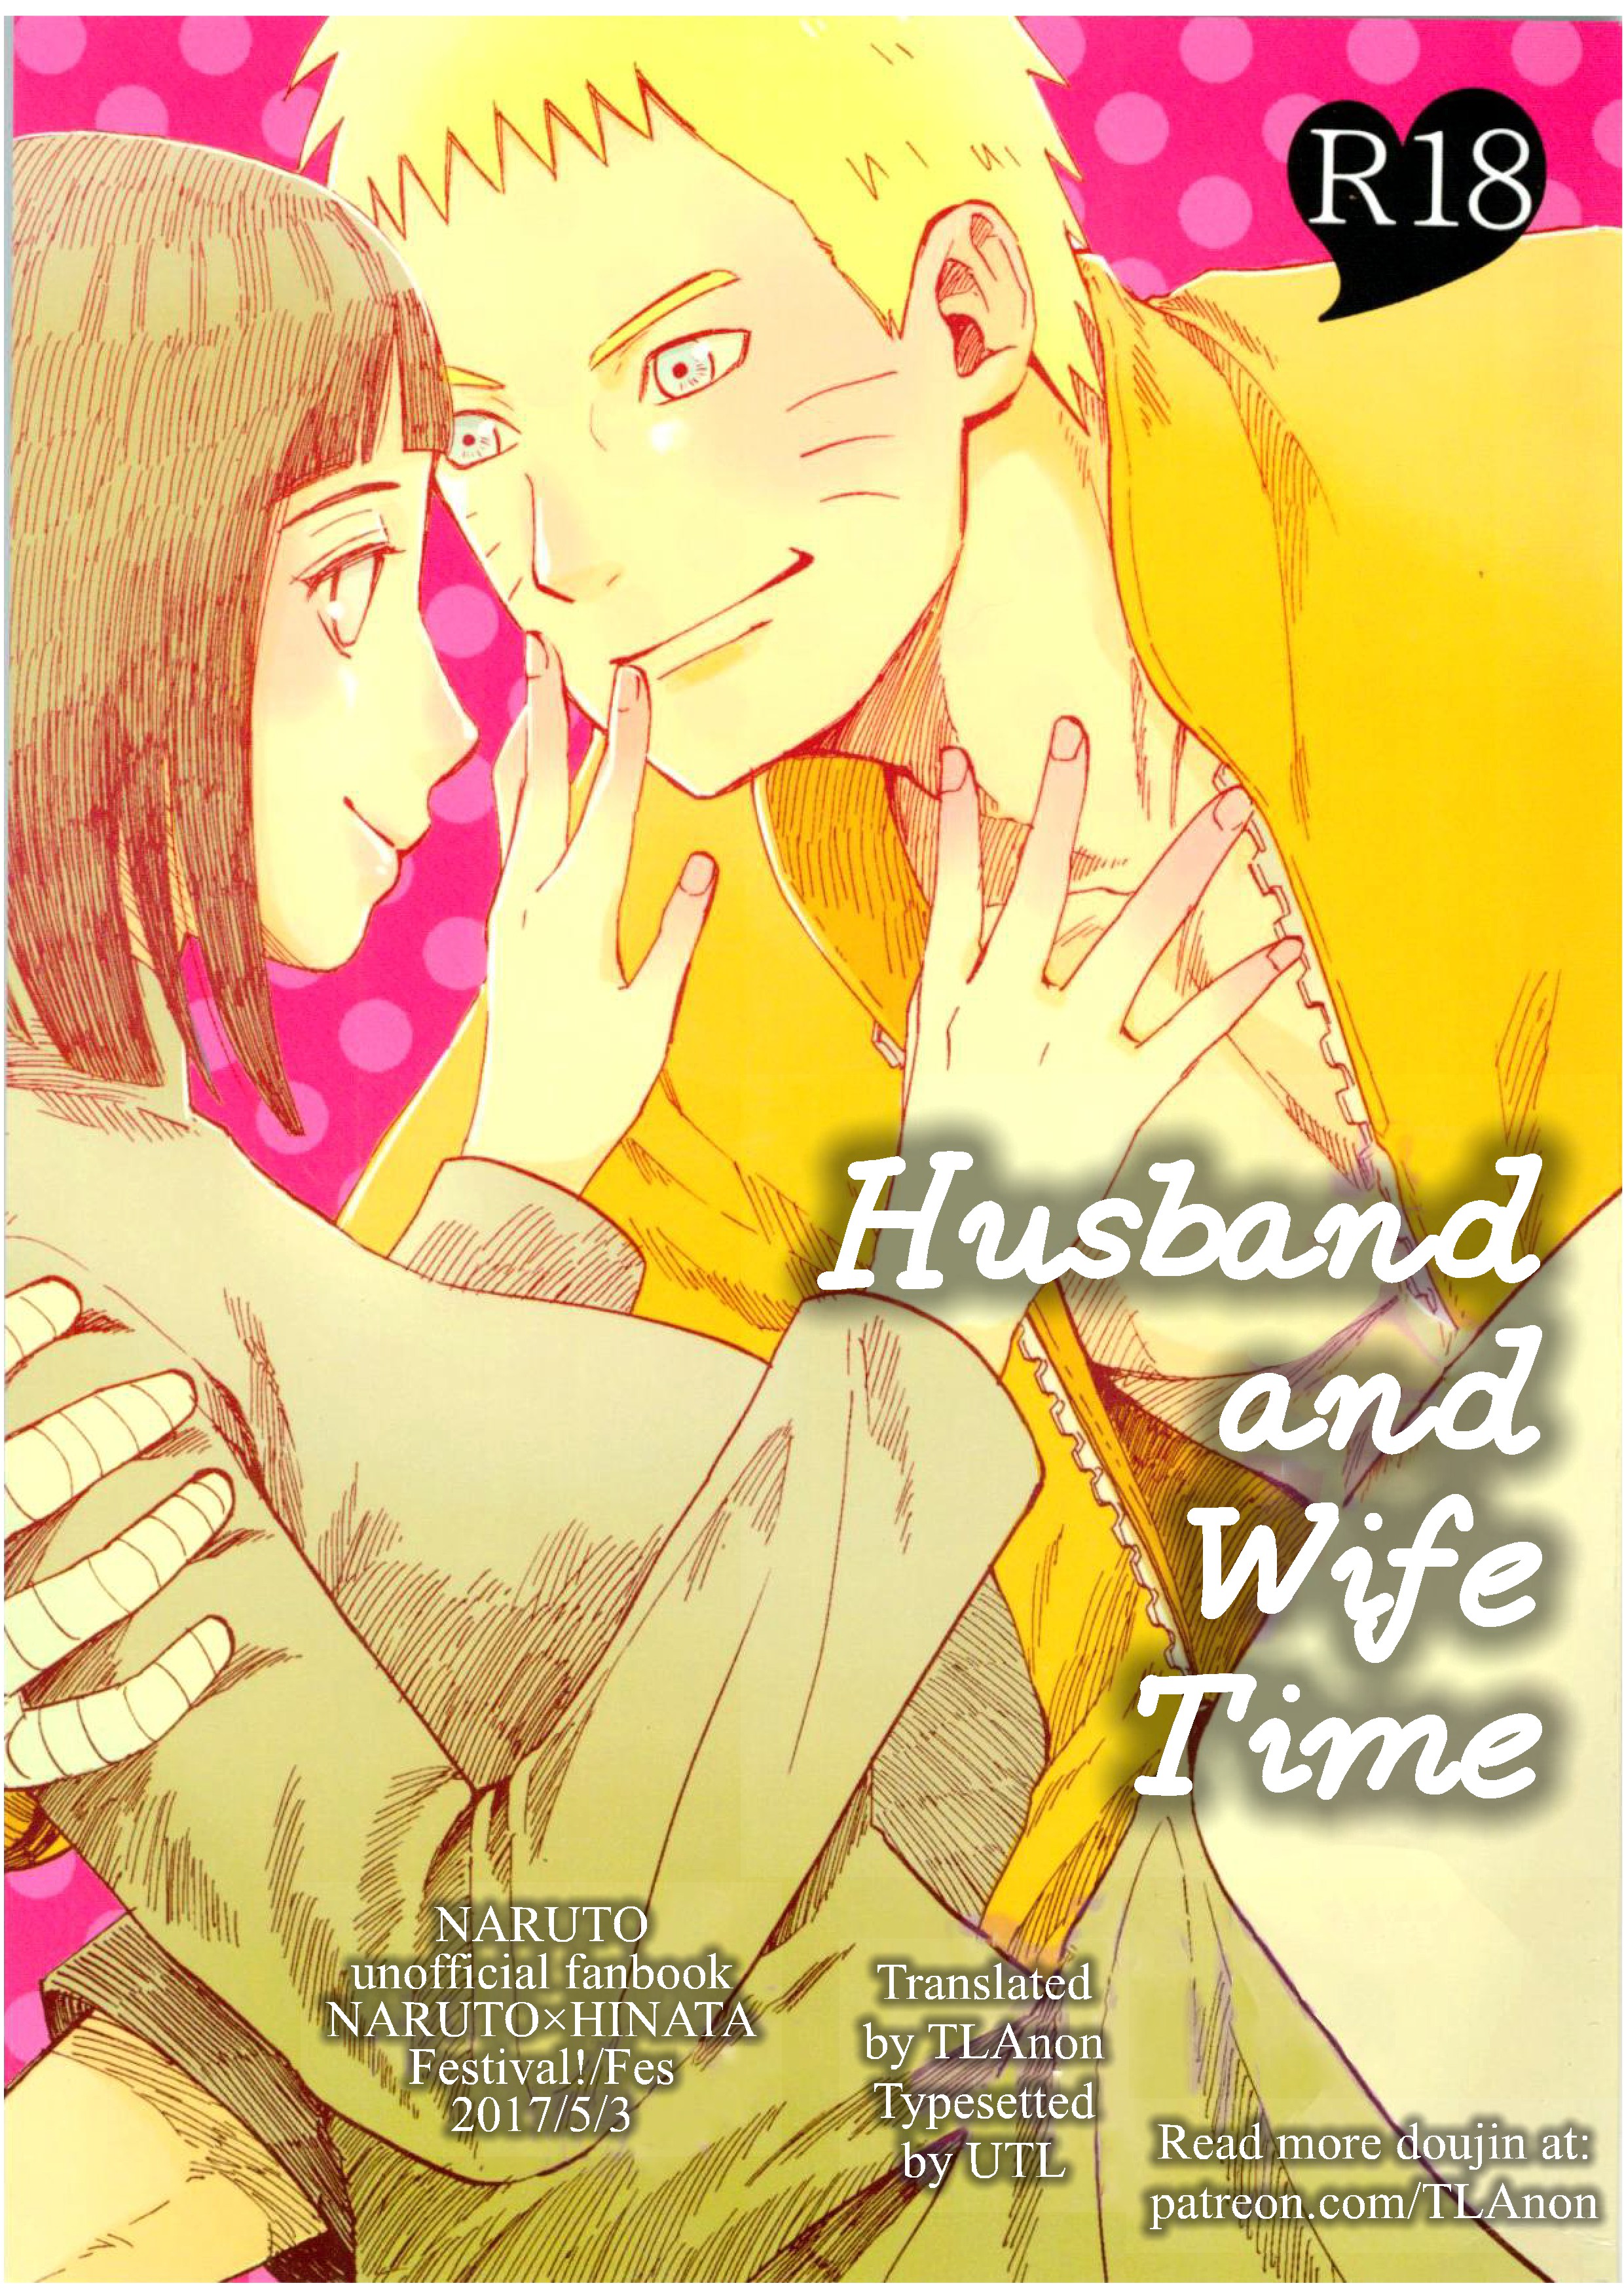 Fes - Husband and Wife Time (Naruto) Hentai Comics